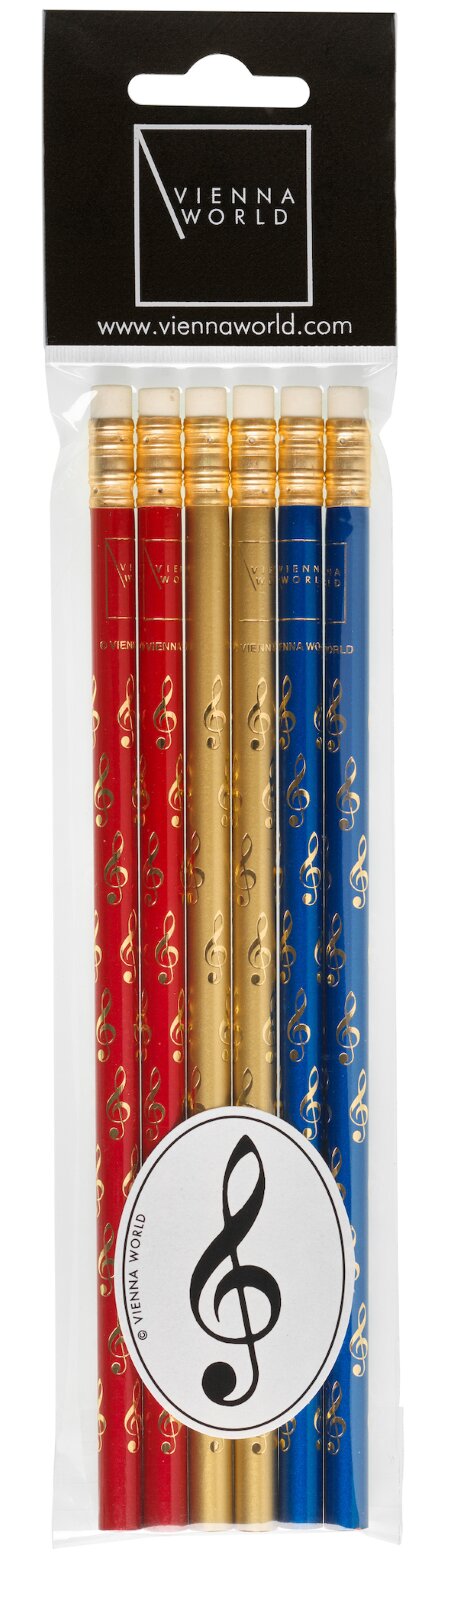 Vienna World Set mit 6 ViolinschlüsselstiftenBleistift-Set G-Schlüssel assortiert (6 Stück) rot / gold / blau (6 Stück pro Packung) Schreibmaterial Z 725 : photo 1